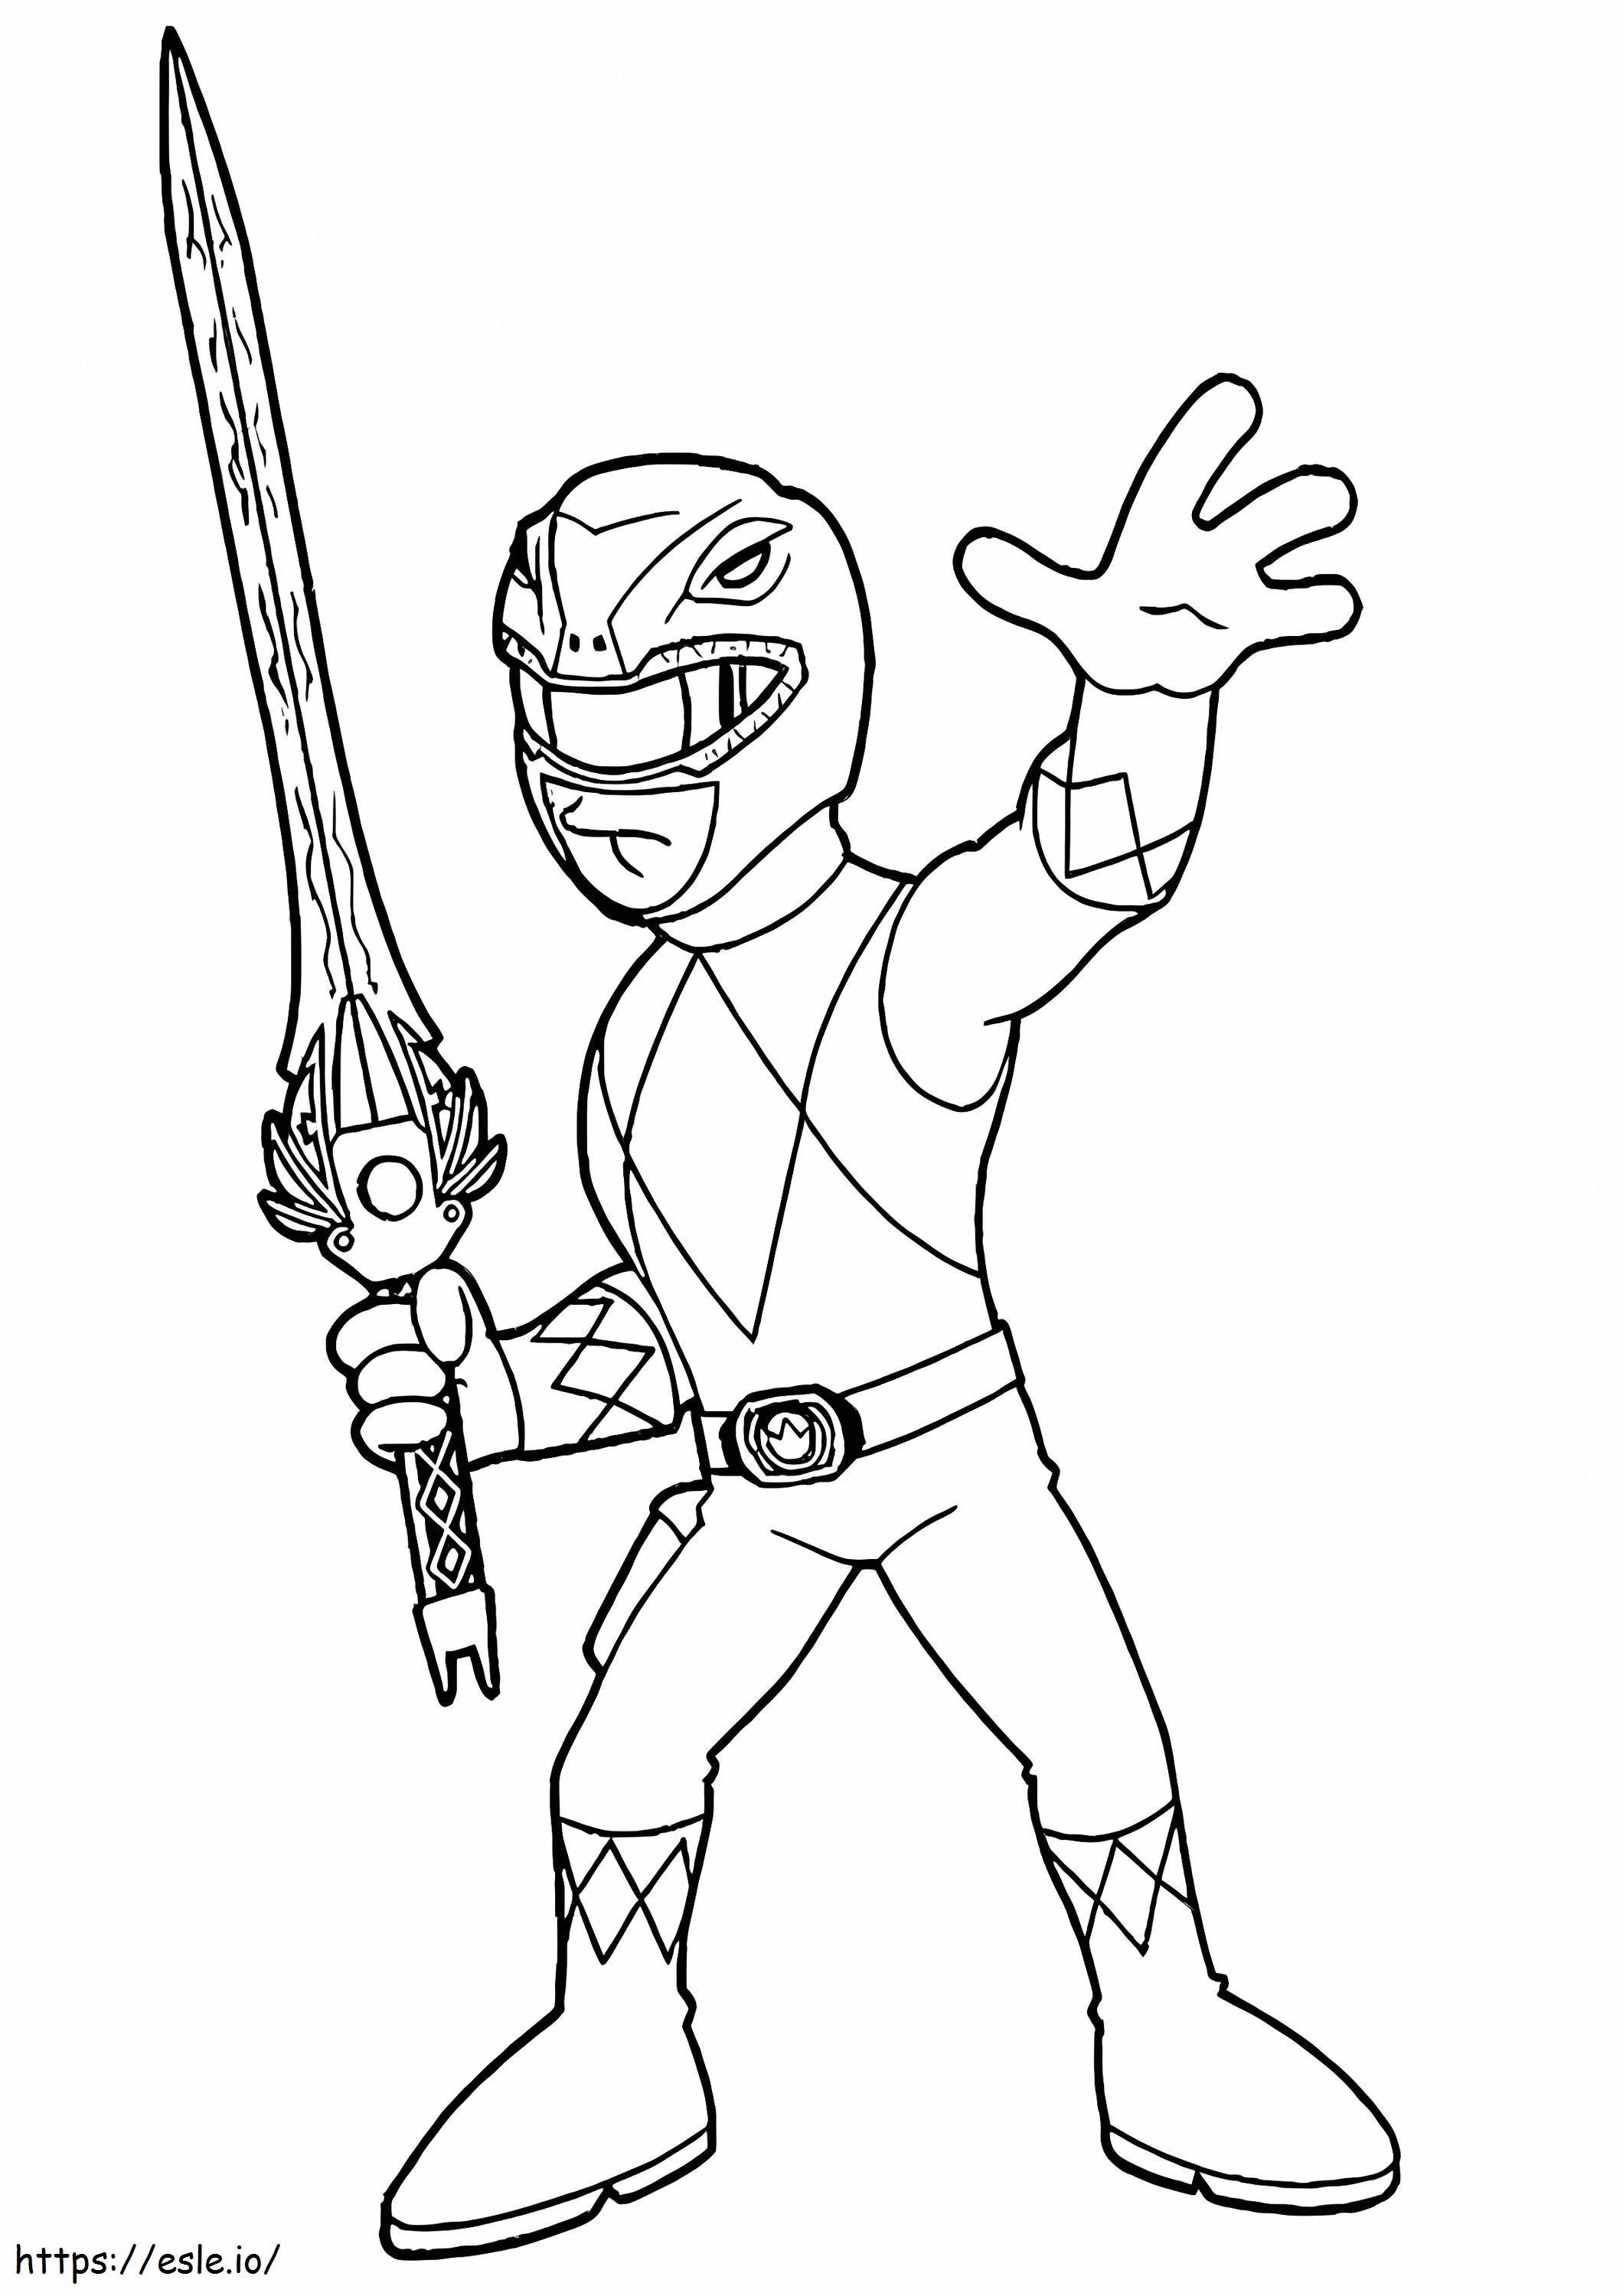 Power Ranger cu sabie de colorat